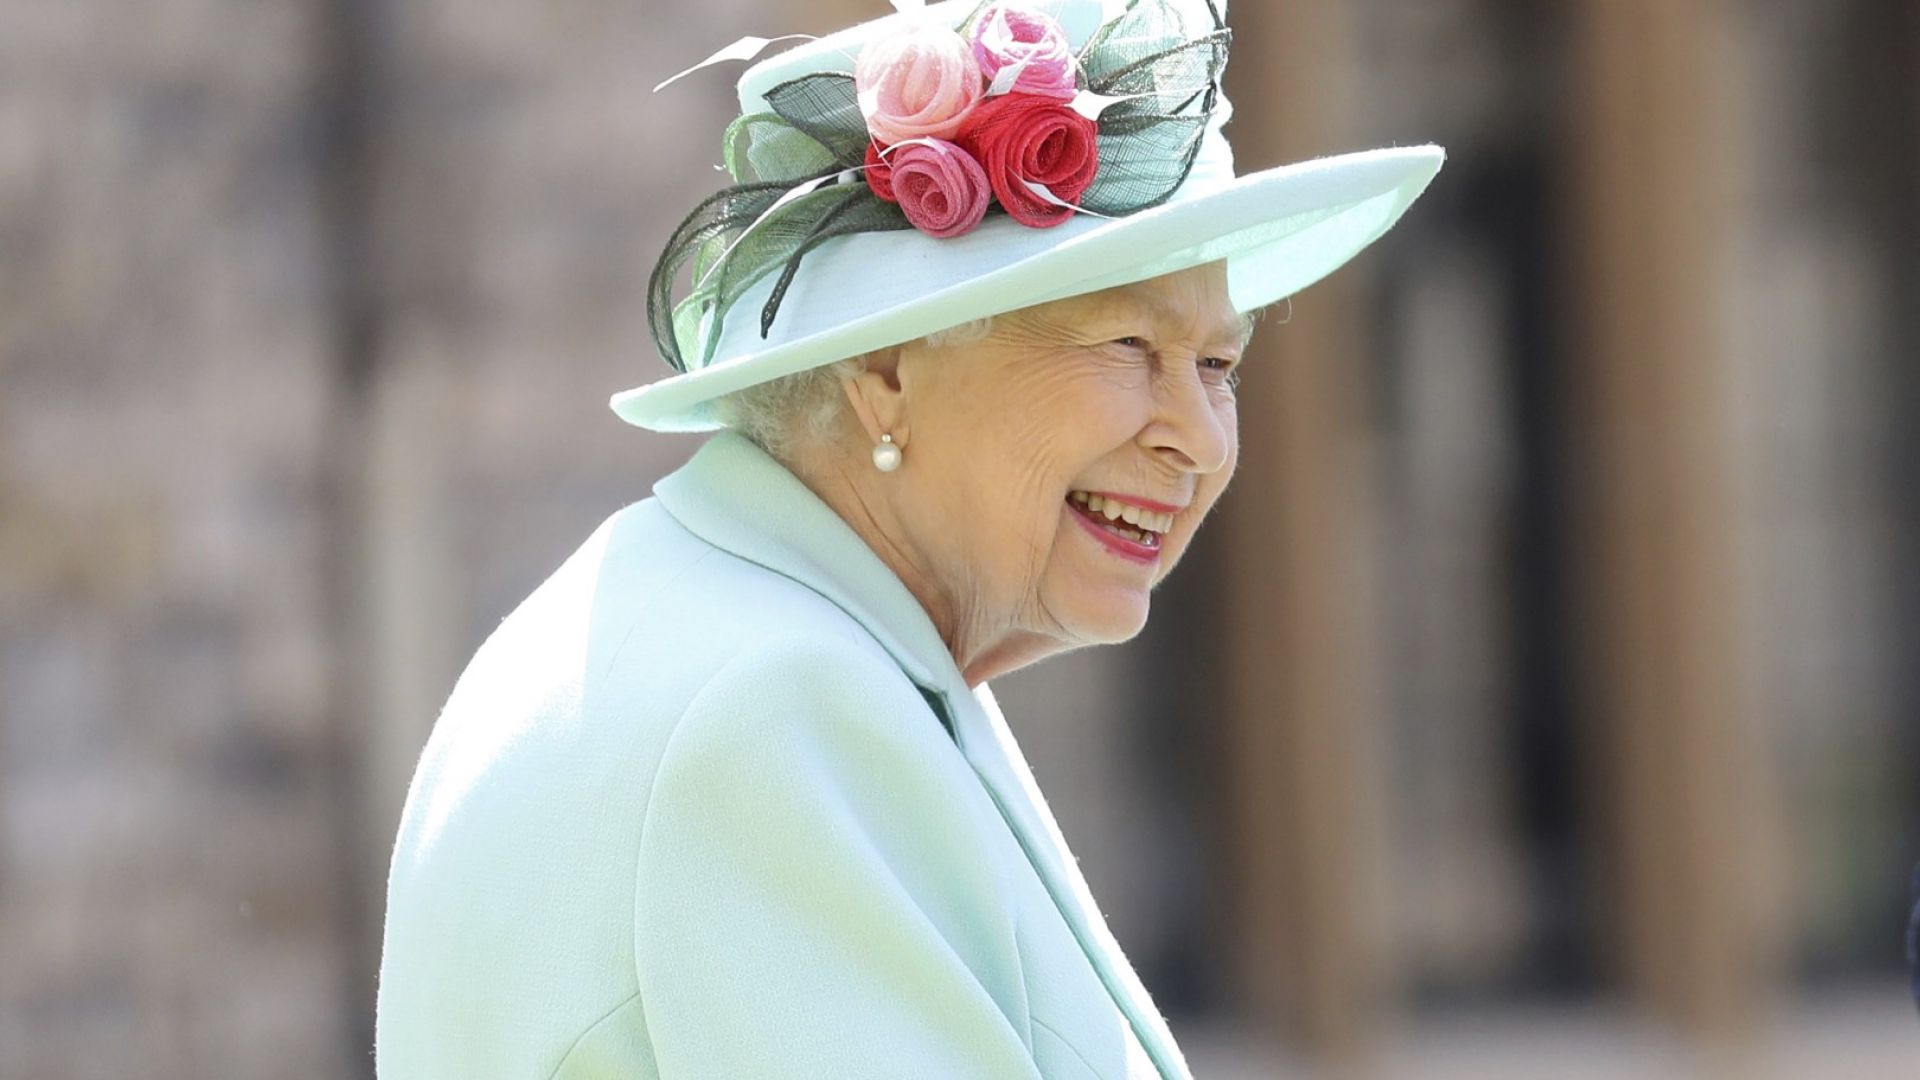 Коледното послание на Елизабет II е отложено заради неяснотата около Брекзит